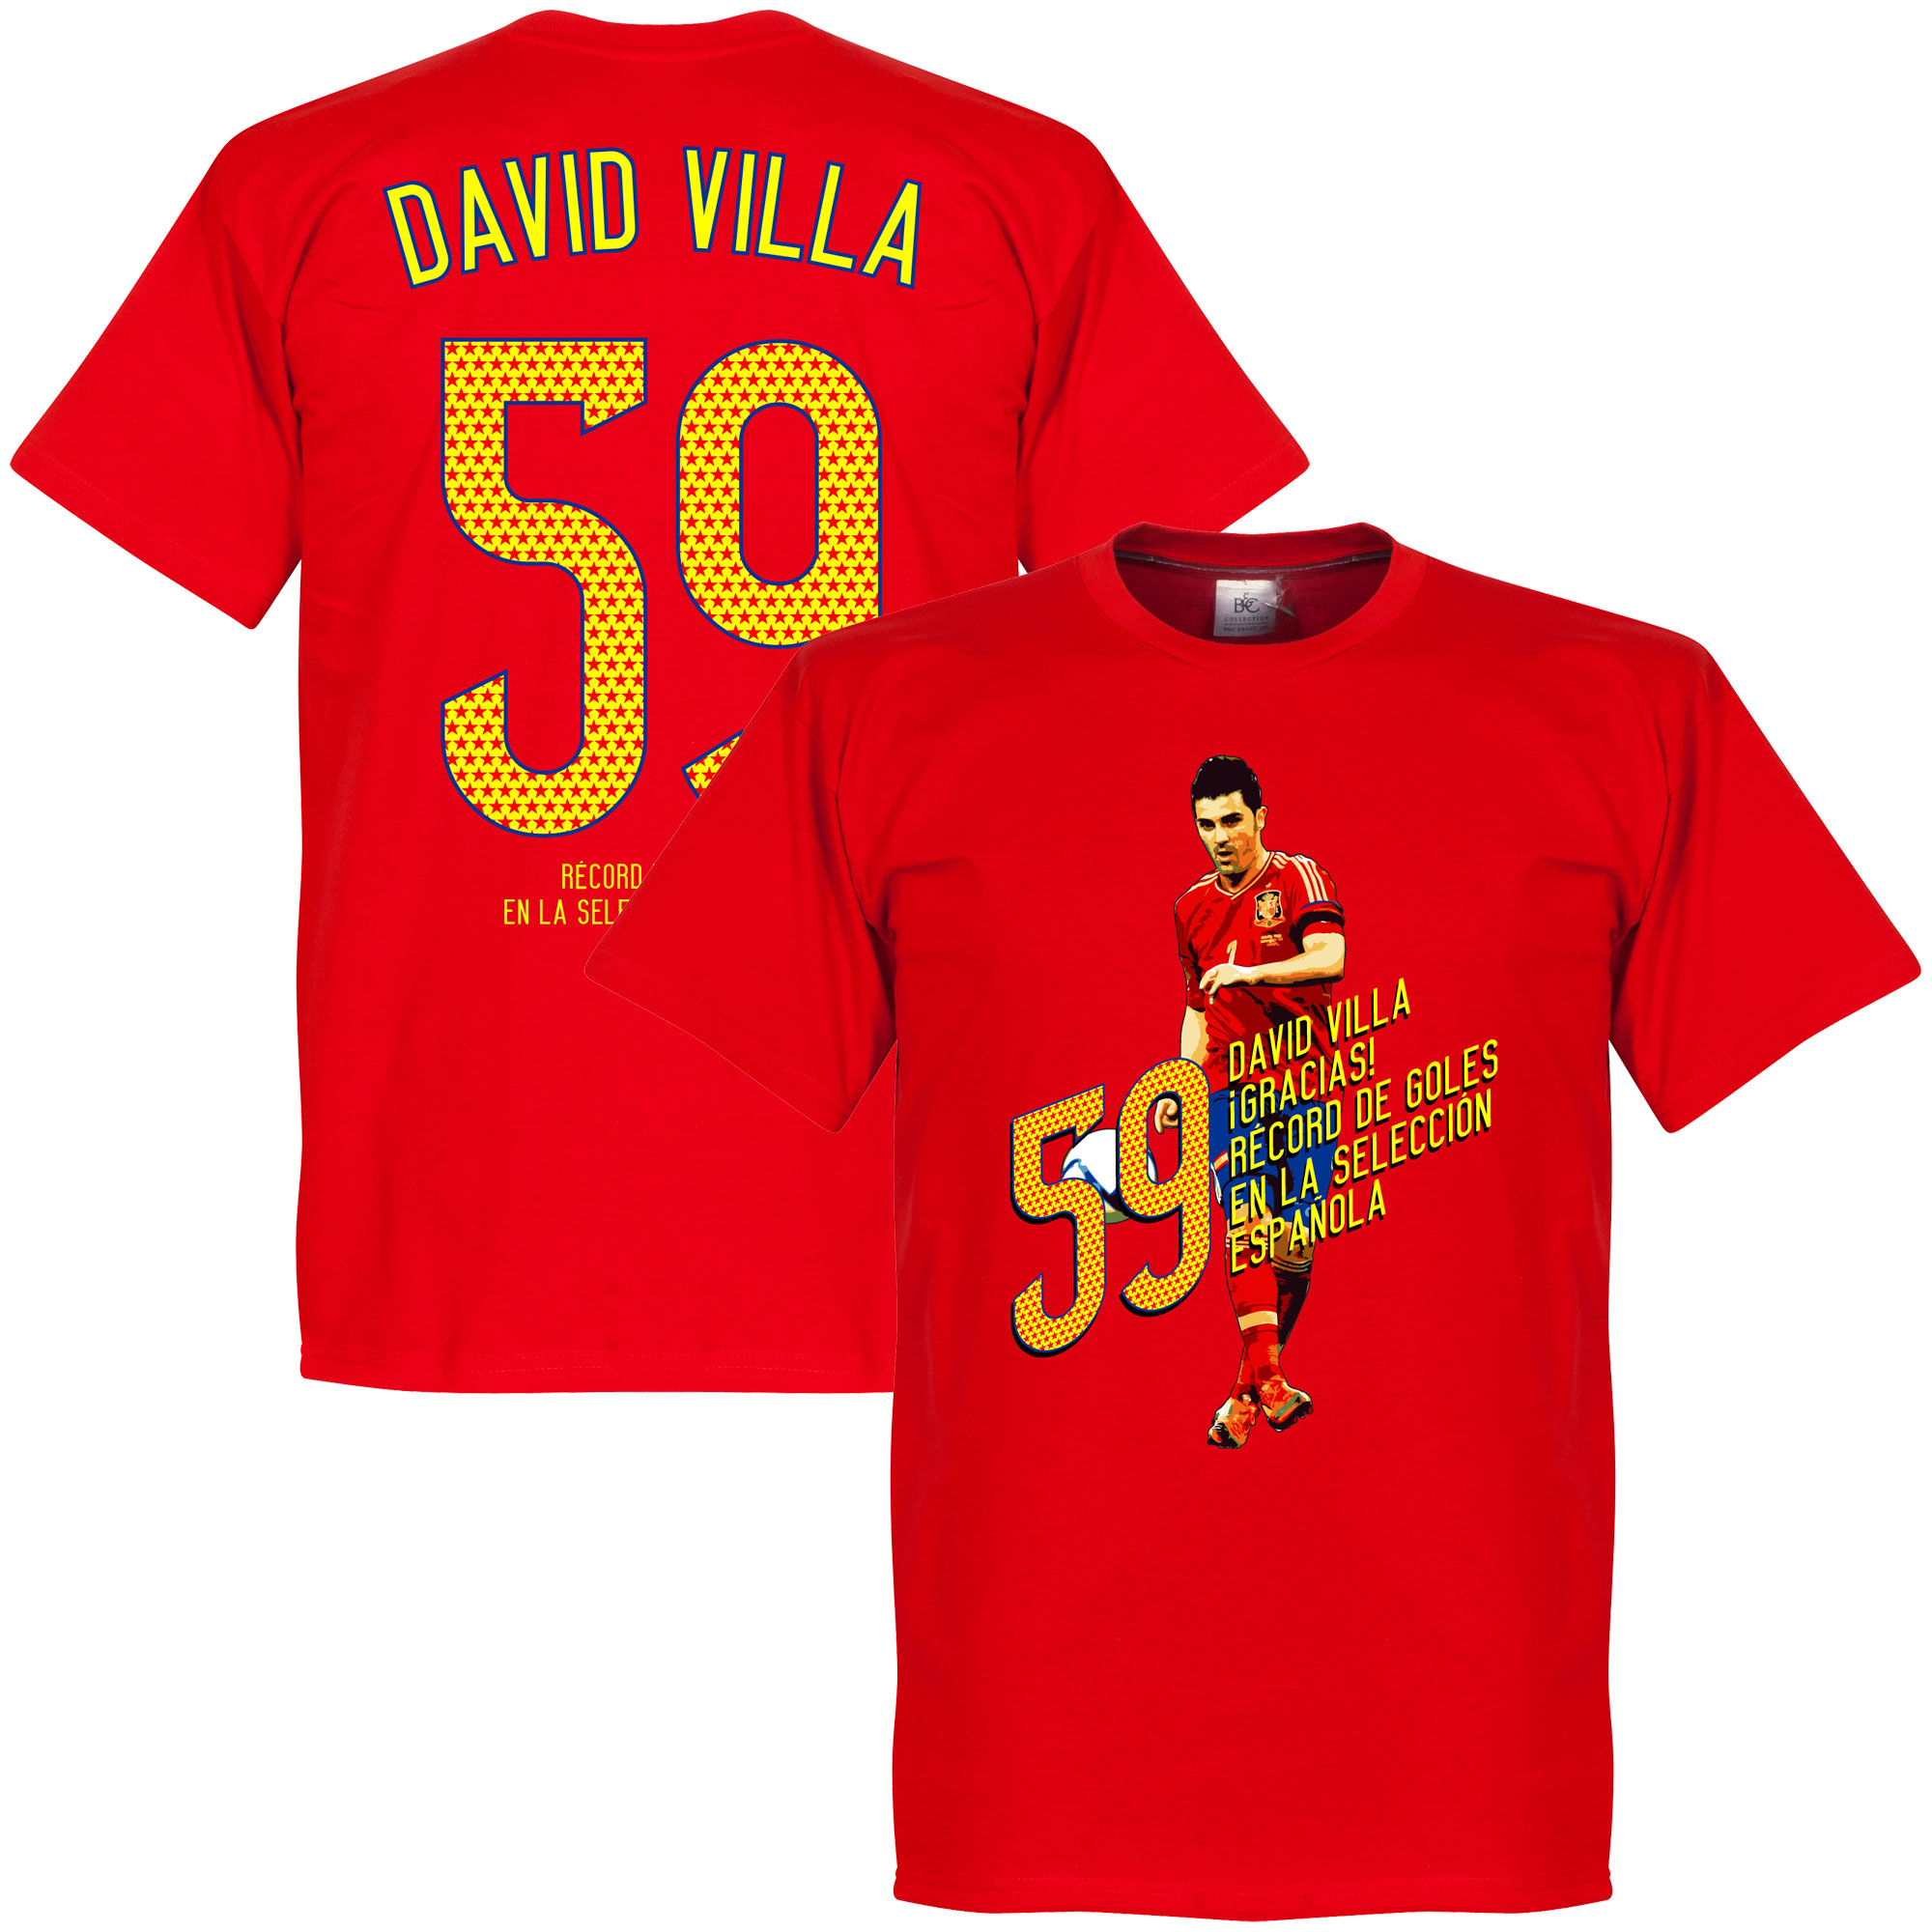 David Villa 59 Goals T-Shirt M